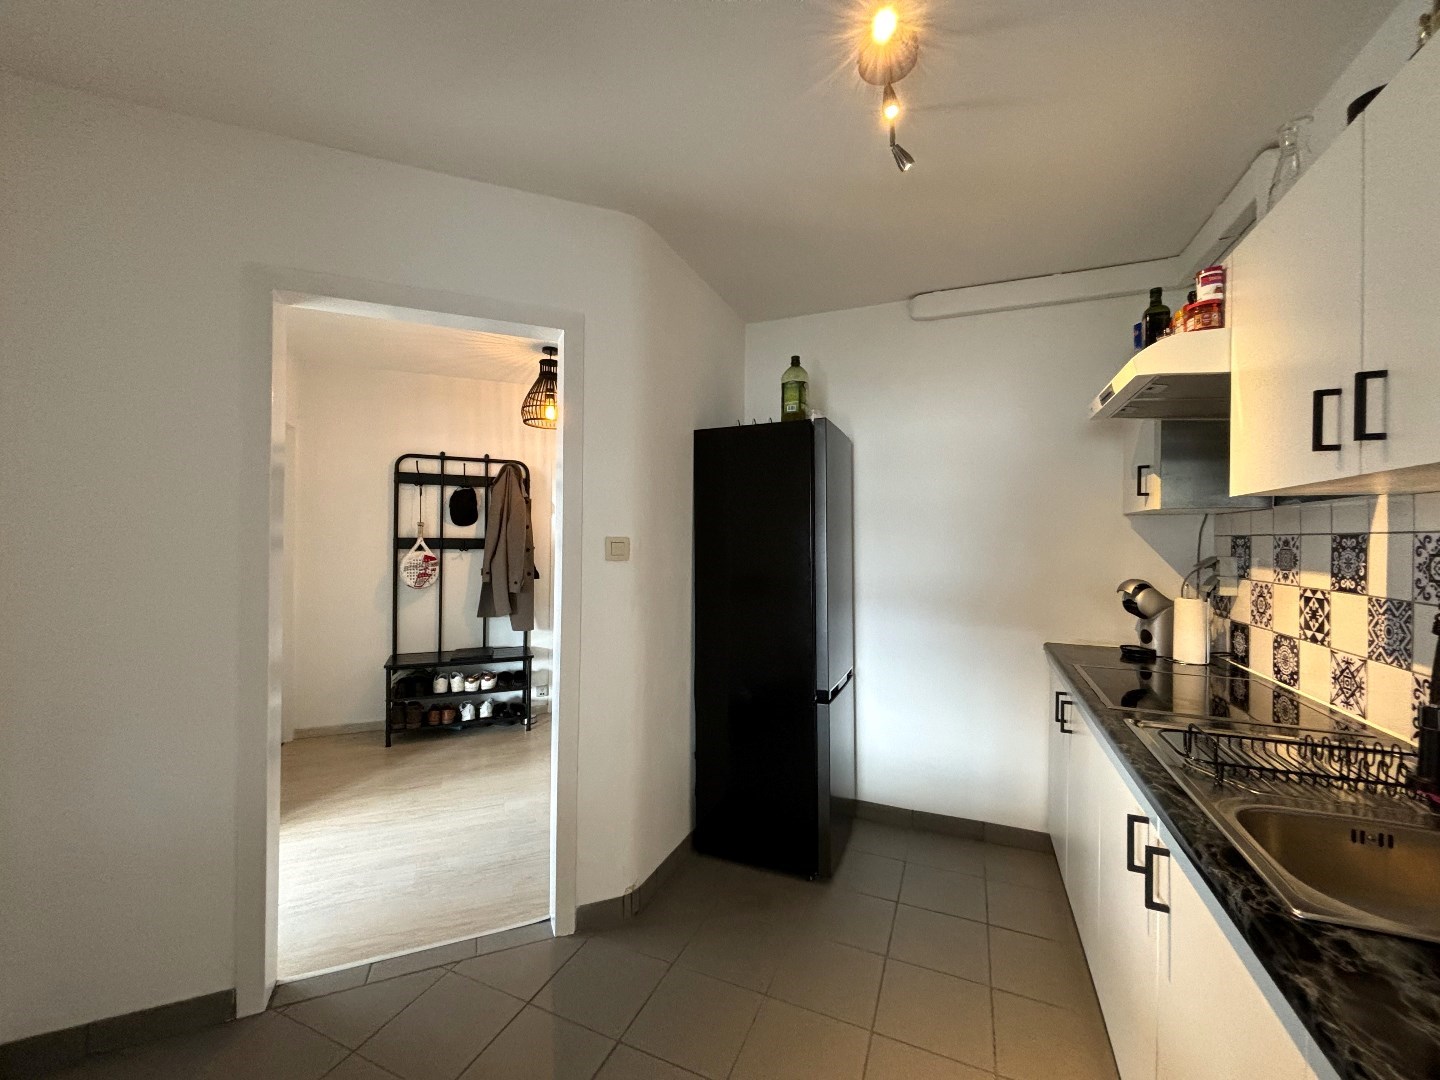 Appartement met 2 ruime slaapkamers in centrum Leopoldsburg! 